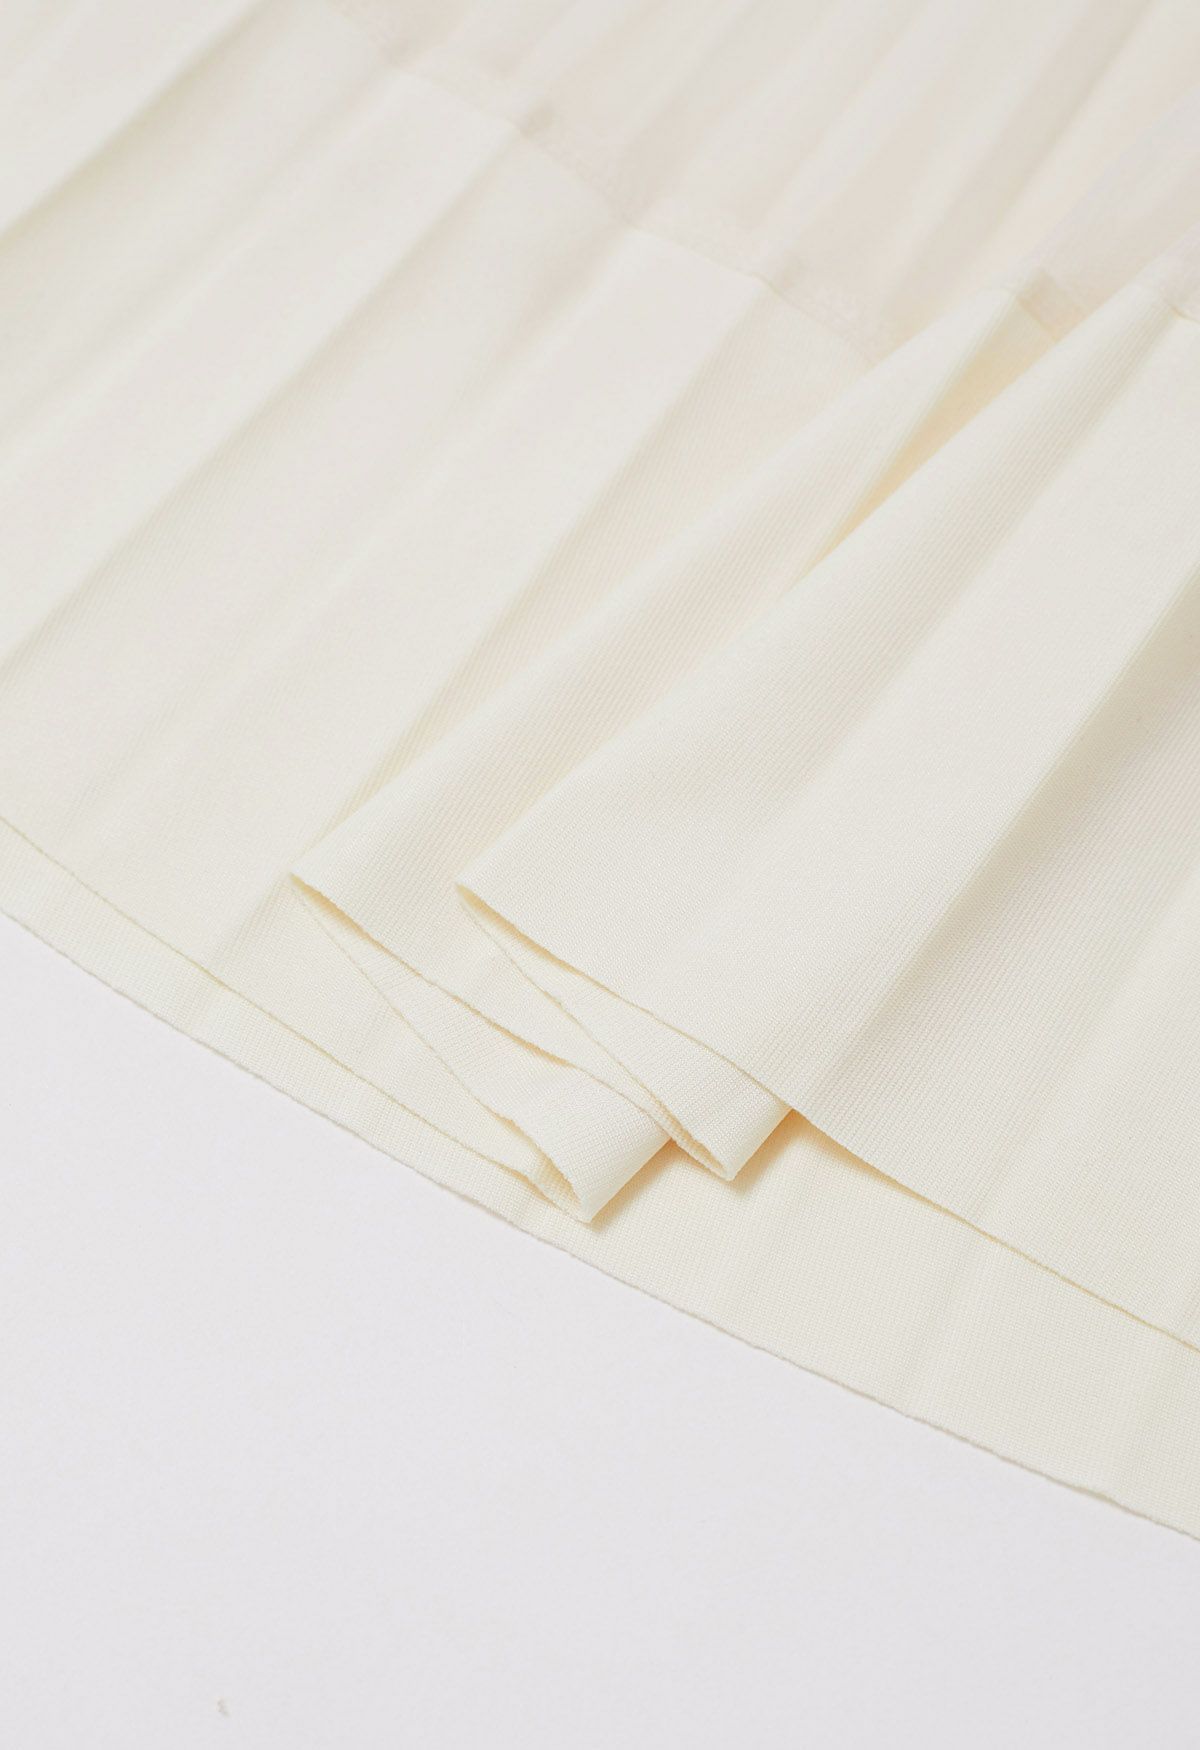 Falda de tul de malla plisada con dobladillo con paneles en color crema